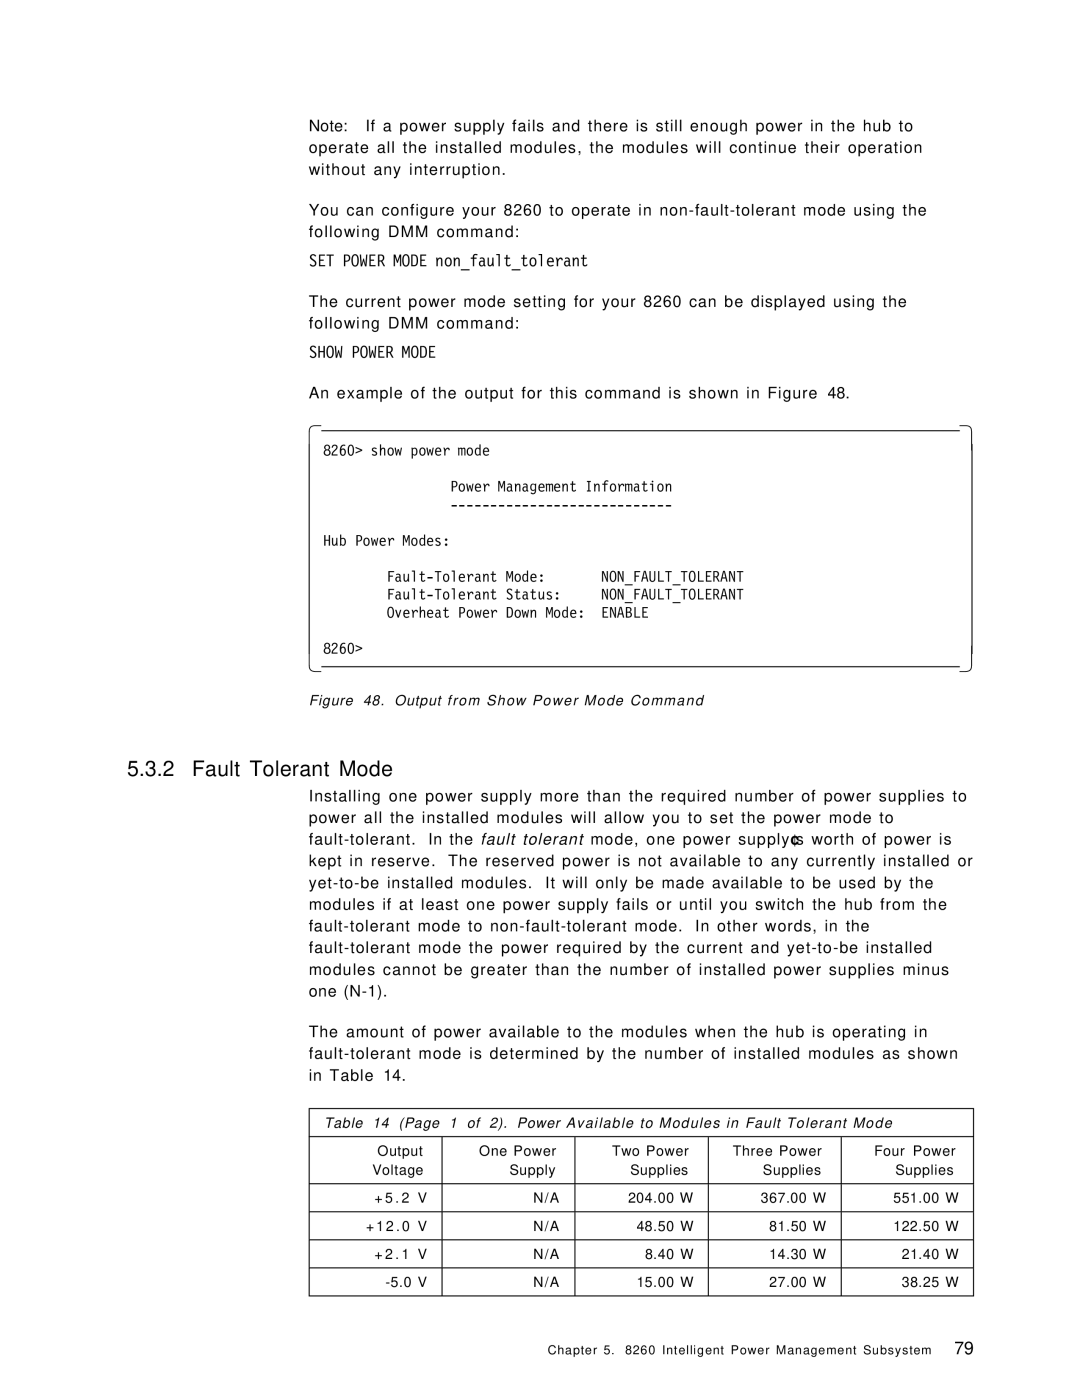 IBM 8260 manual Fault Tolerant Mode, SET Power Mode nonfaulttolerant 